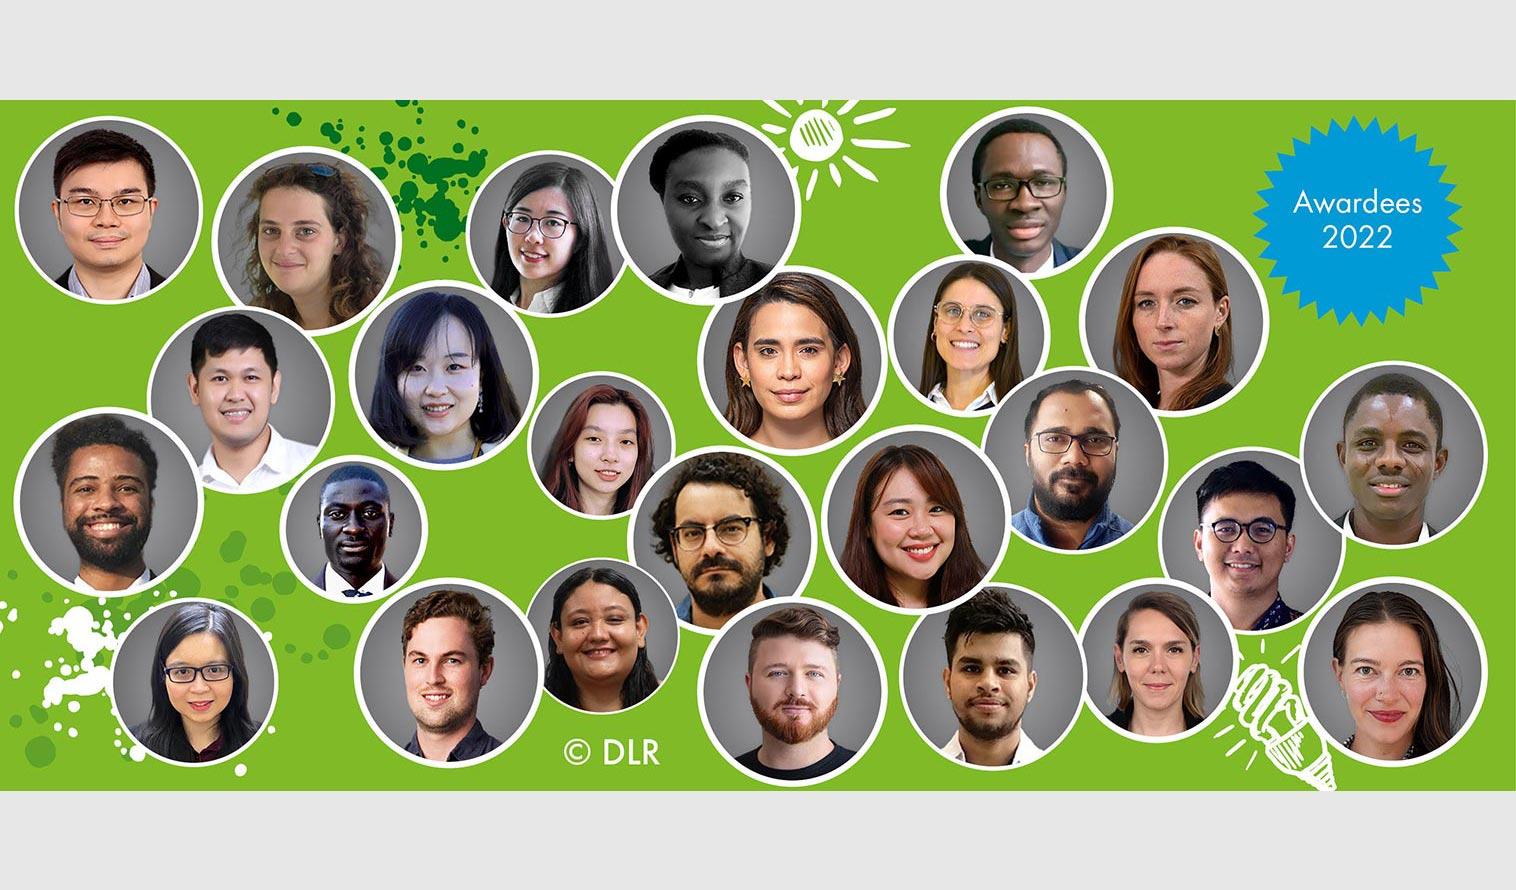 Gruppenbild der Green Talents 2022